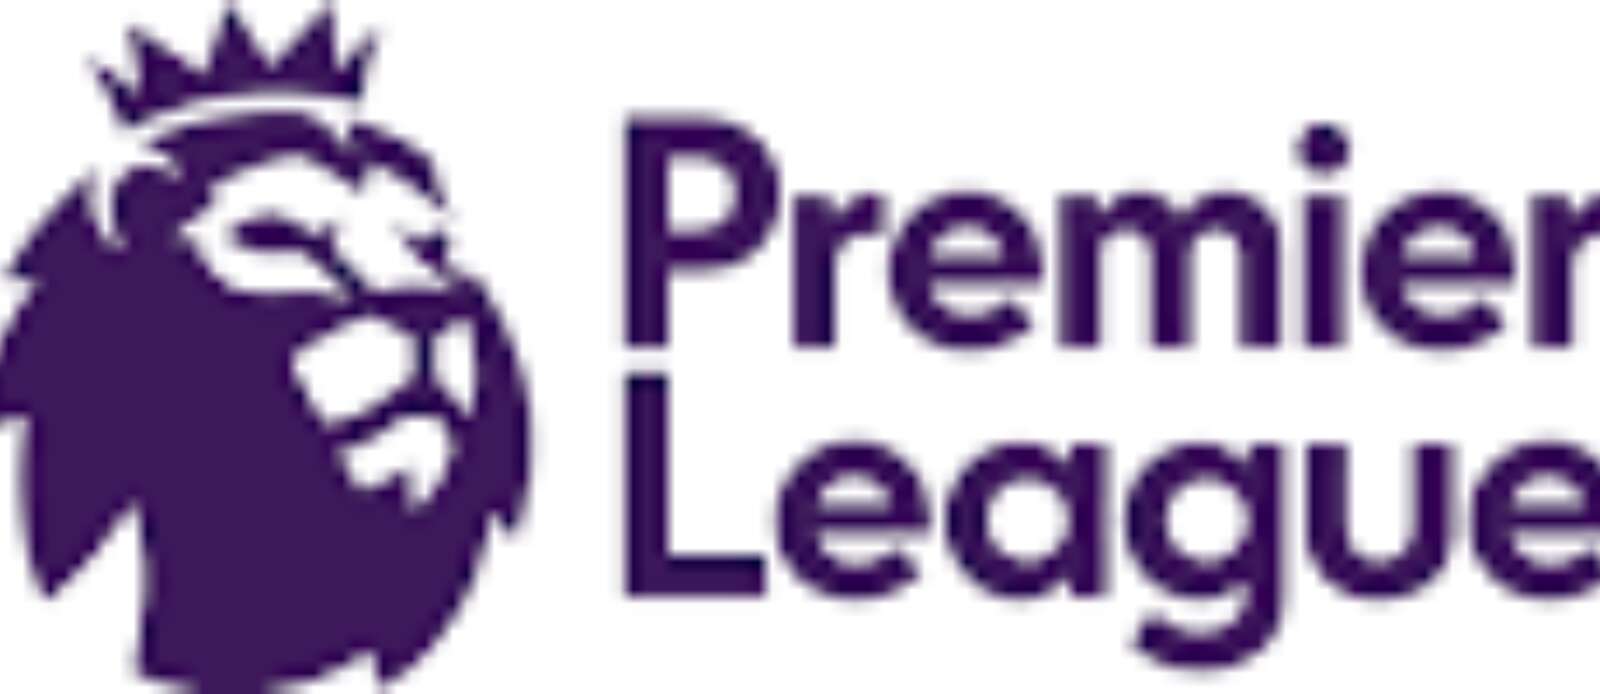 Premier League Fans Fund Executive (PLCF) Header Image.